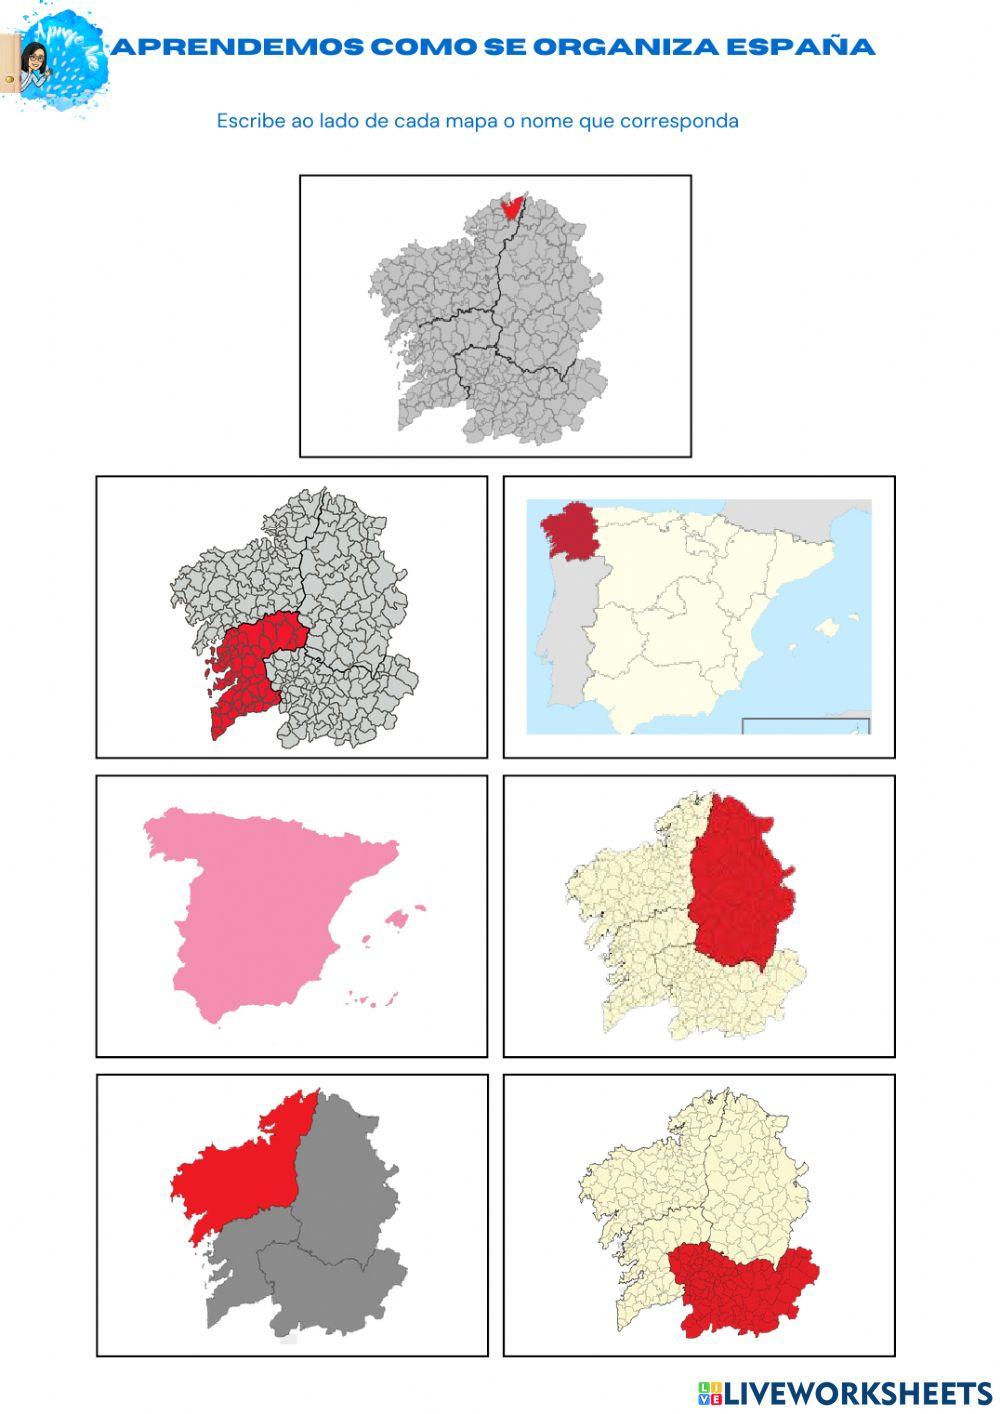 Organización territorial de España